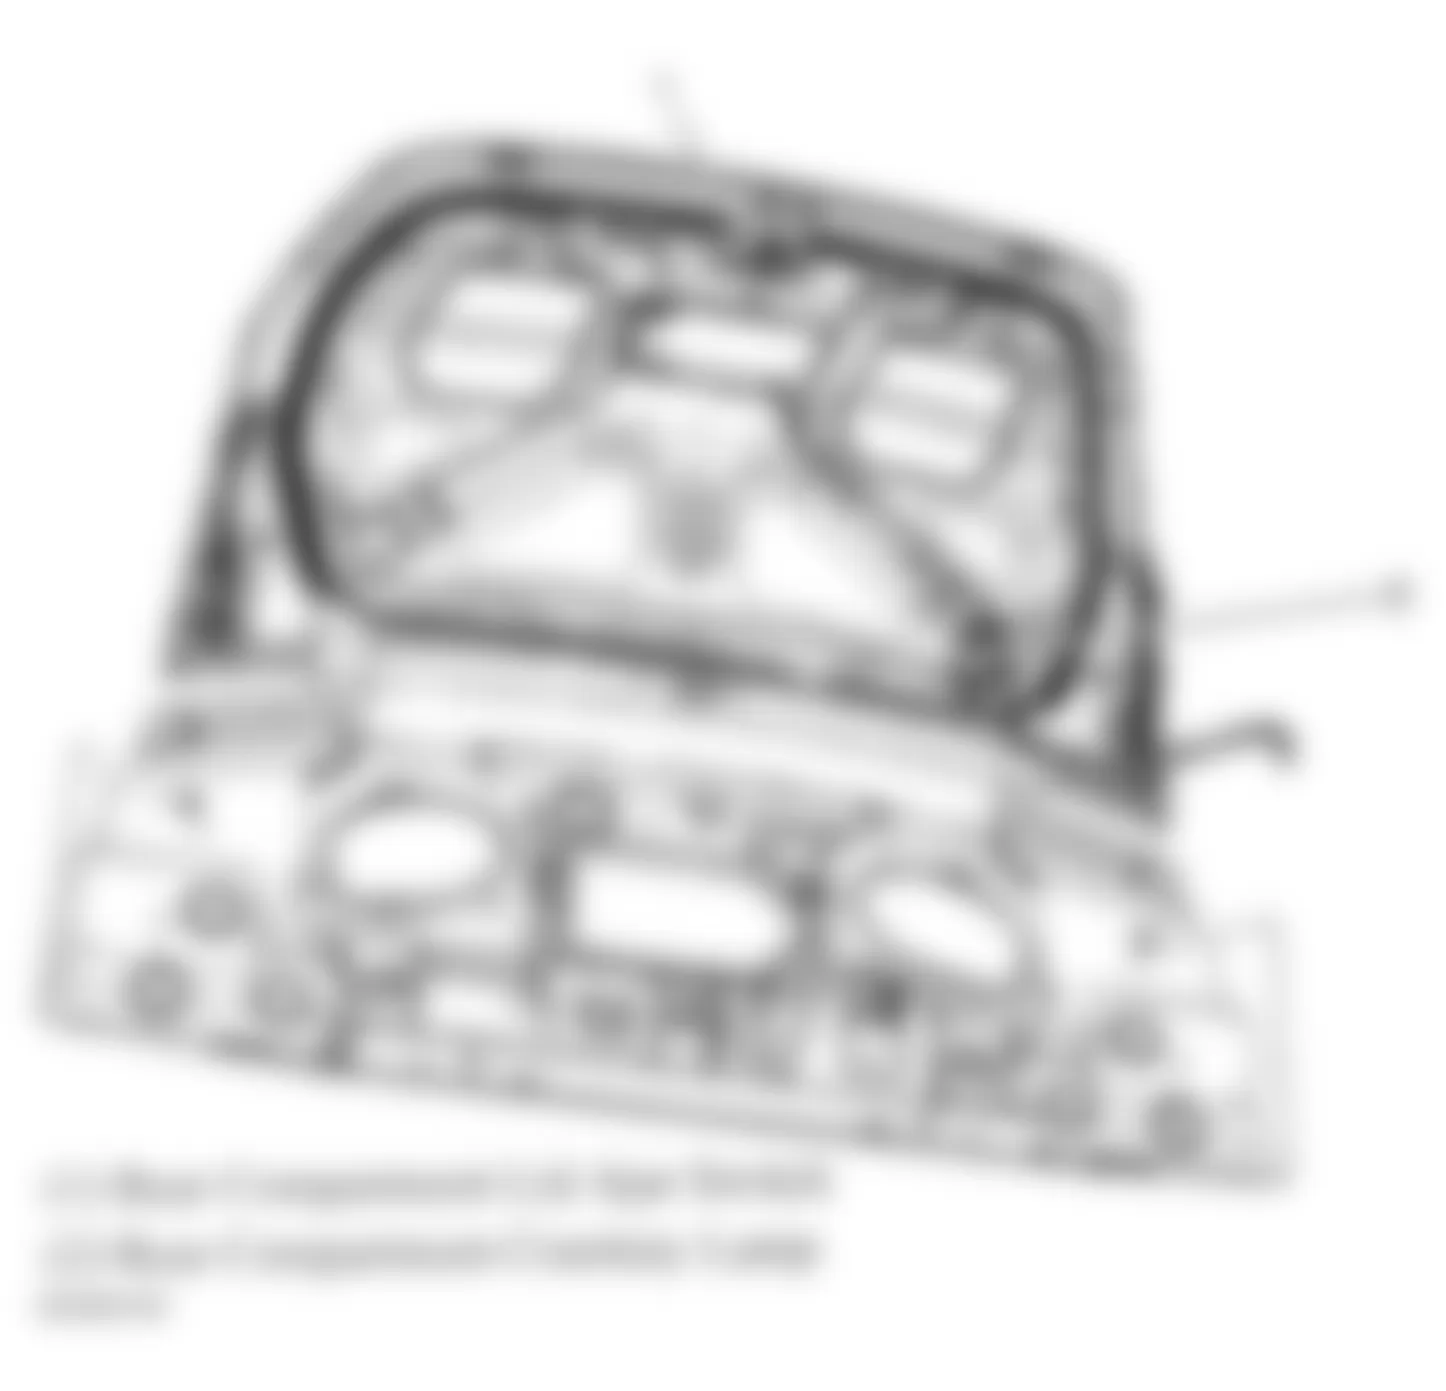 Buick Allure CXL 2006 - Component Locations -  Trunk Lid